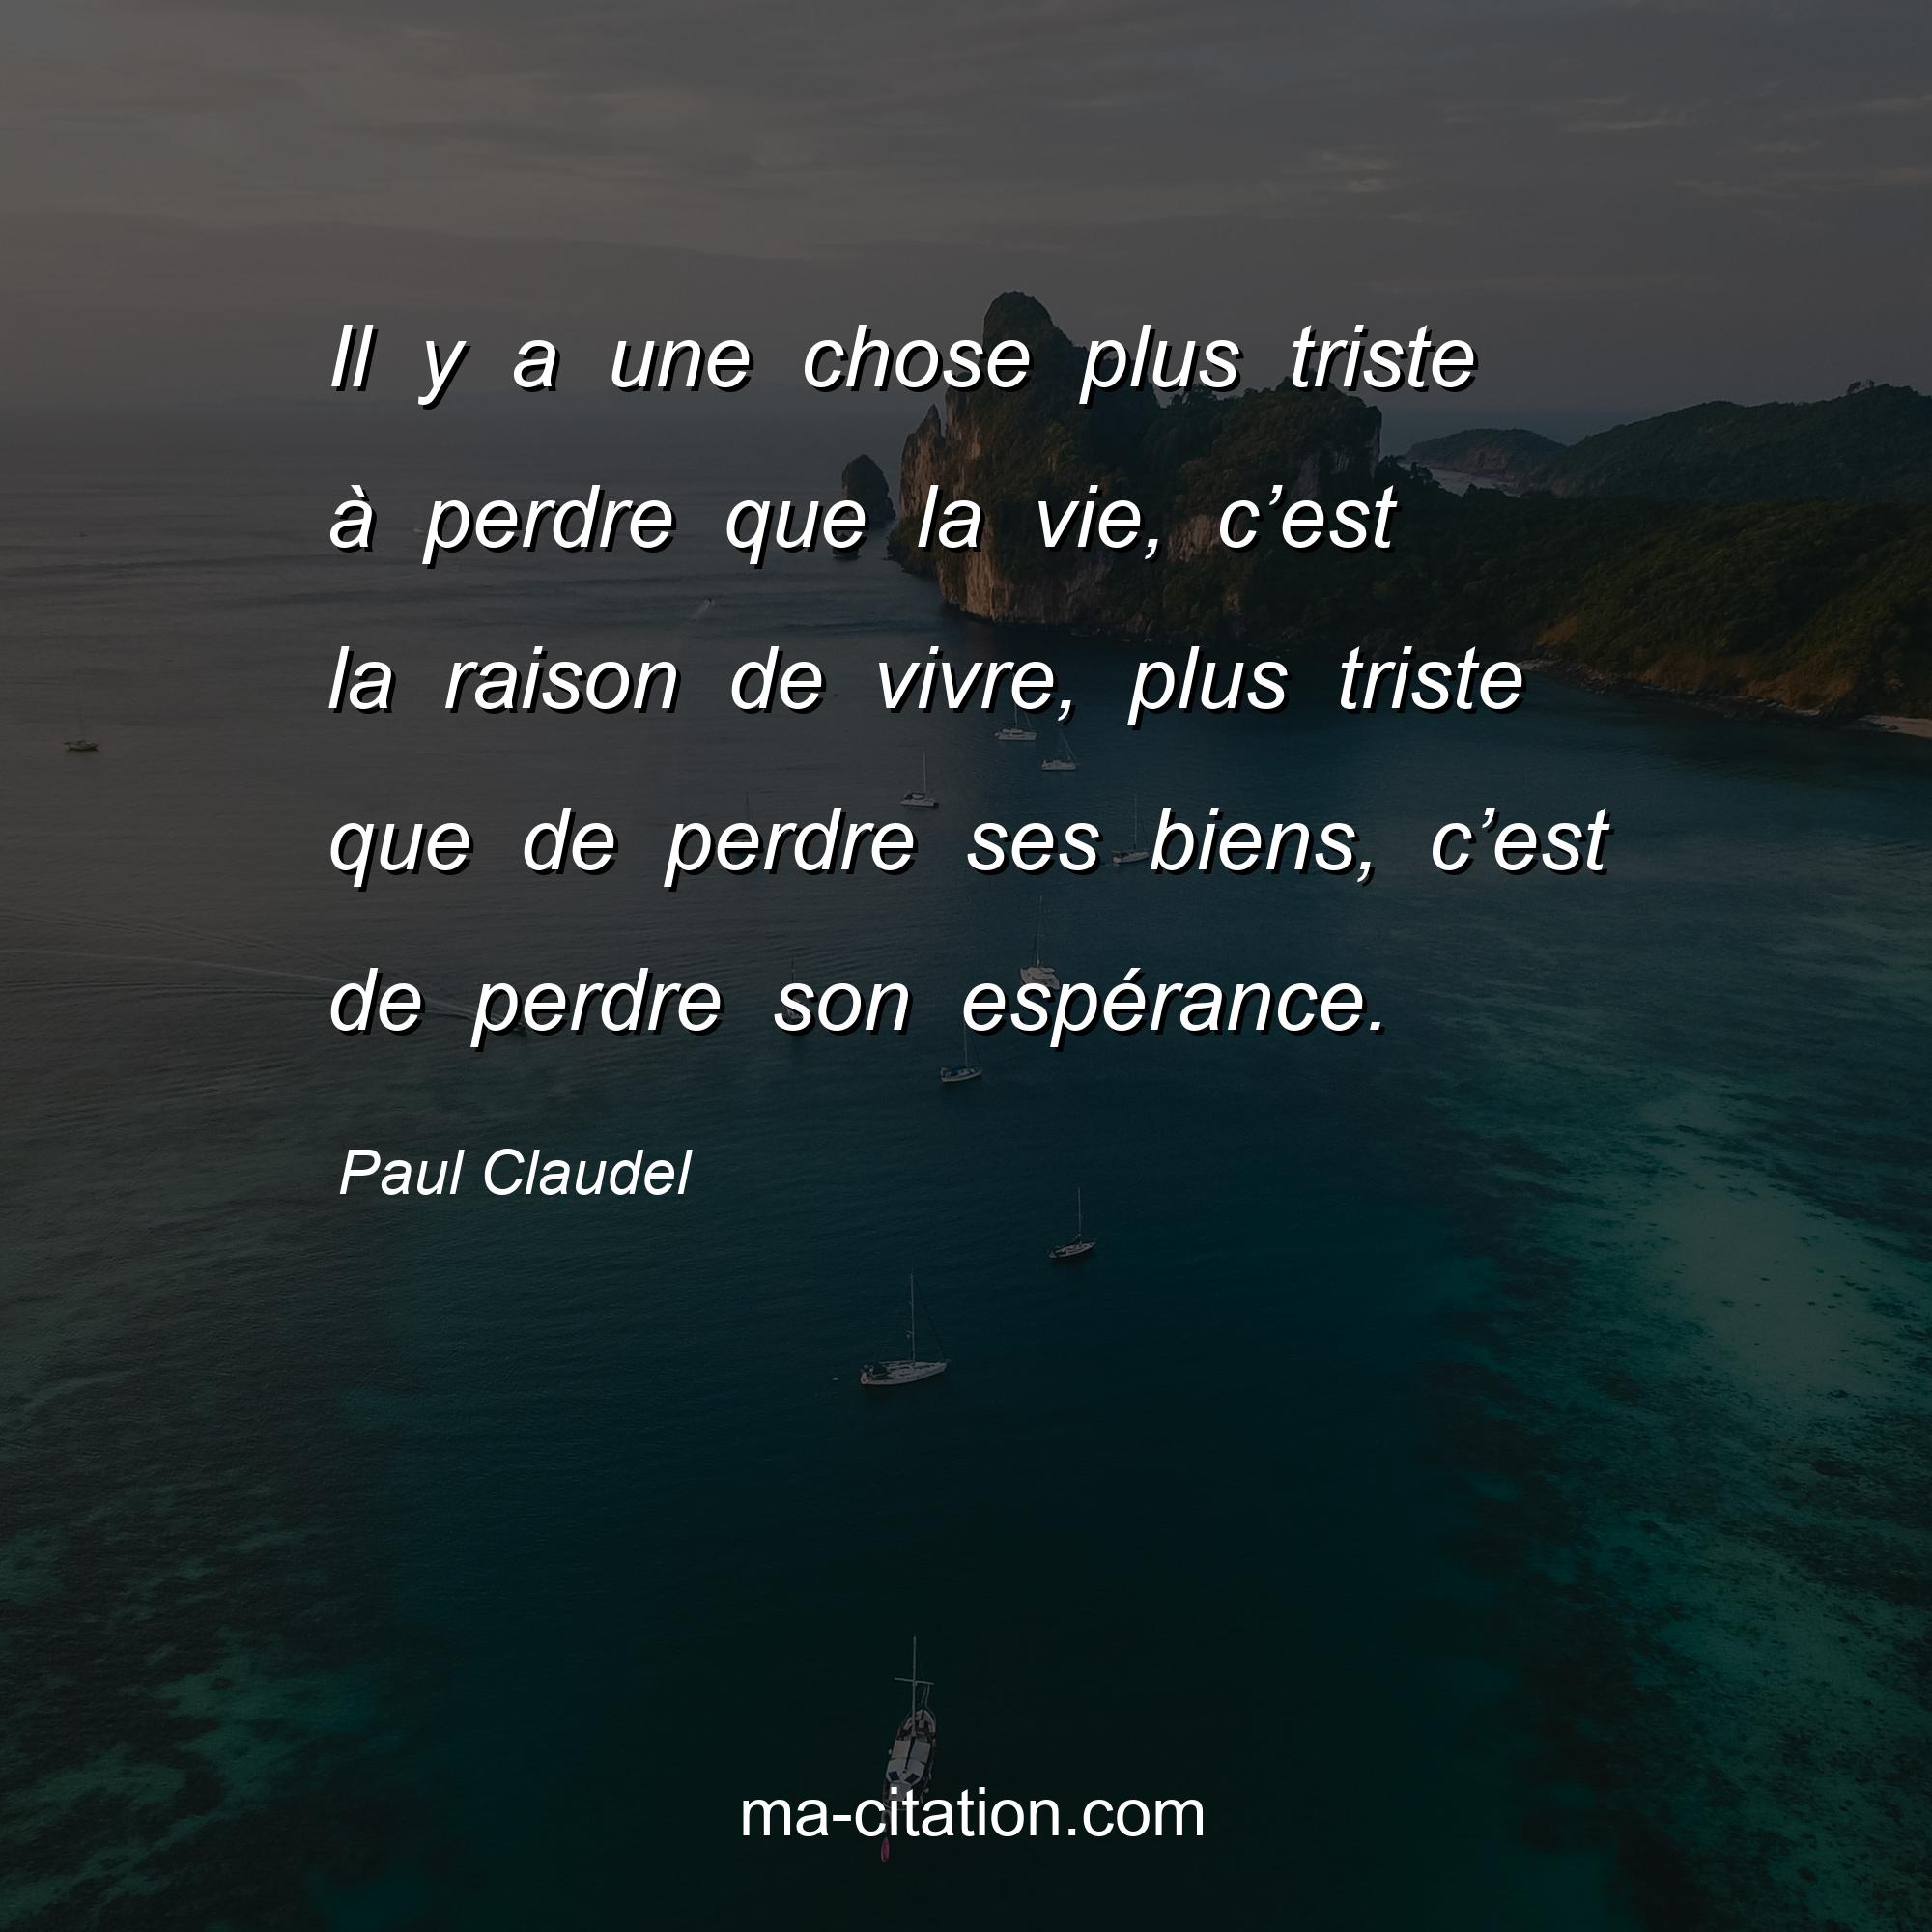 Paul Claudel : Il y a une chose plus triste à perdre que la vie, c’est la raison de vivre, plus triste que de perdre ses biens, c’est de perdre son espérance.